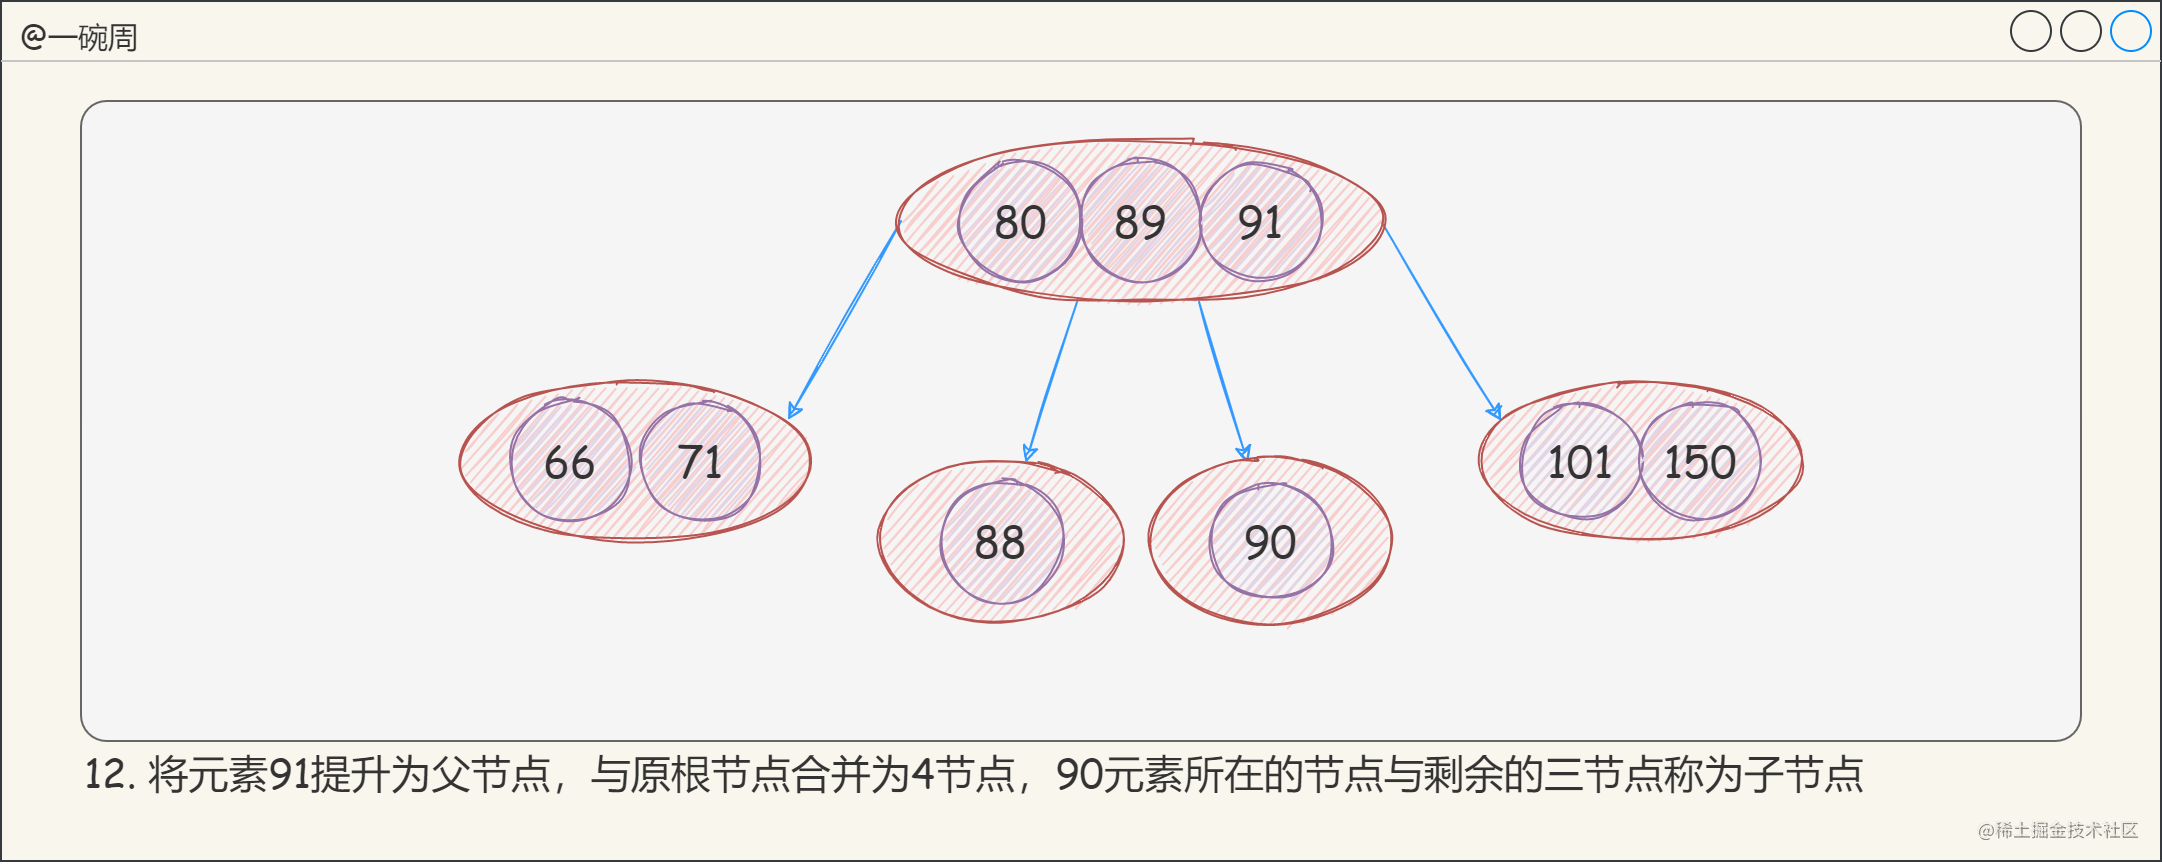 13_2-3-4樹的構建過程8_peEpW9t5rc.png